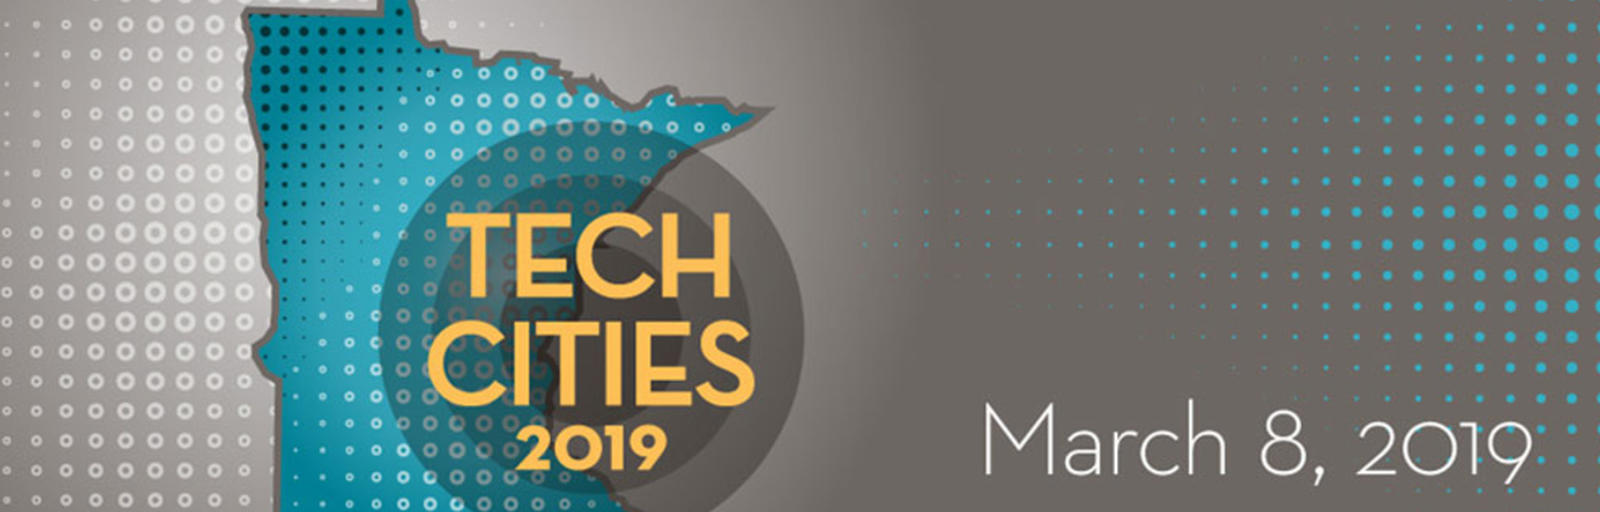 Tech Cities 2019